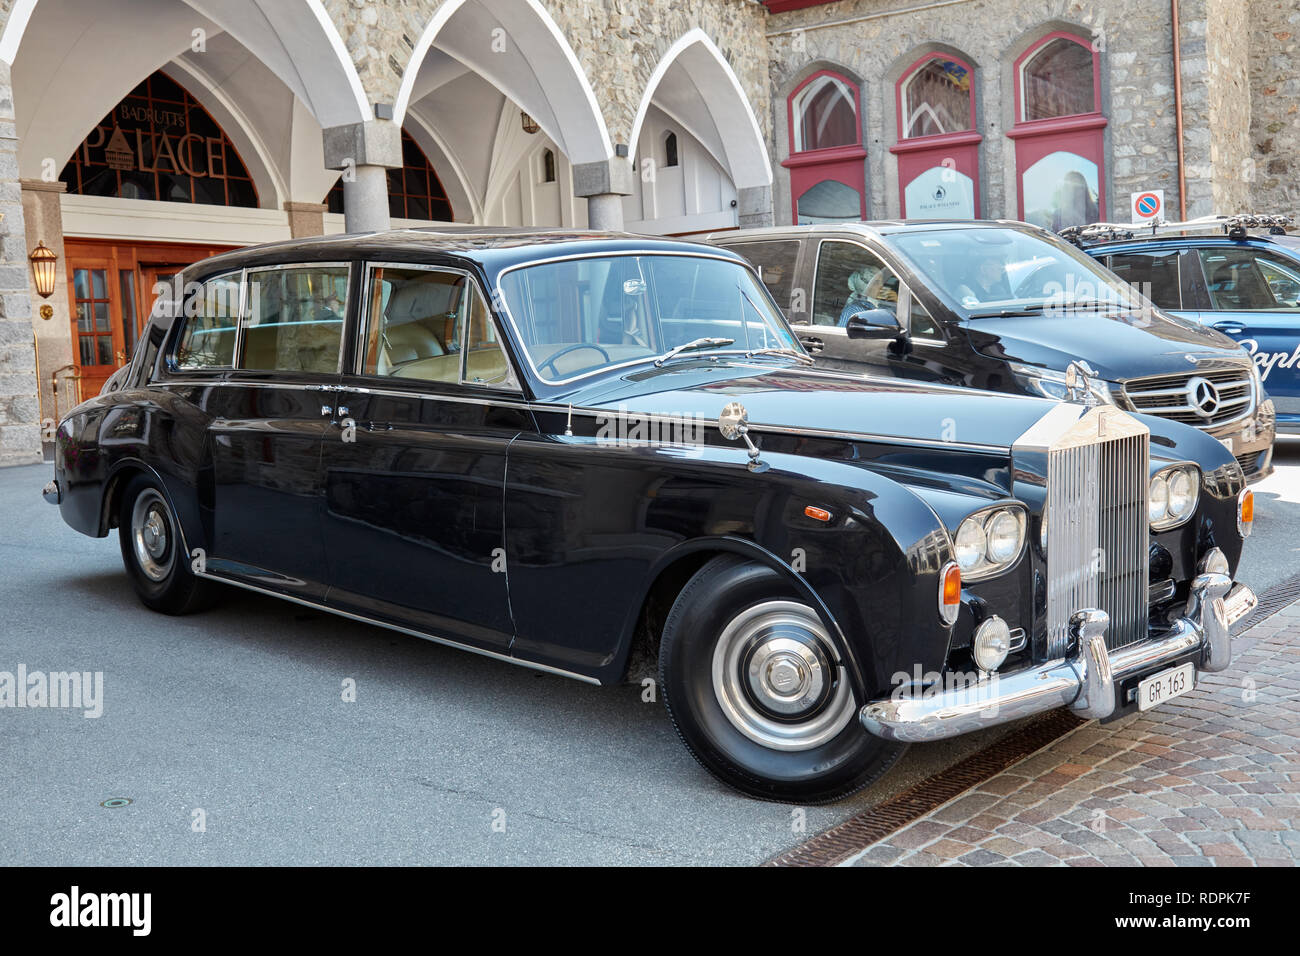 SANKT MORITZ, SCHWEIZ - 16. AUGUST 2018: Rolls Royce schwarz Auto vor  Badrutt's Palace - Luxus Hotel in einem Sommertag in Sankt Moritz,  Switzerla Stockfotografie - Alamy